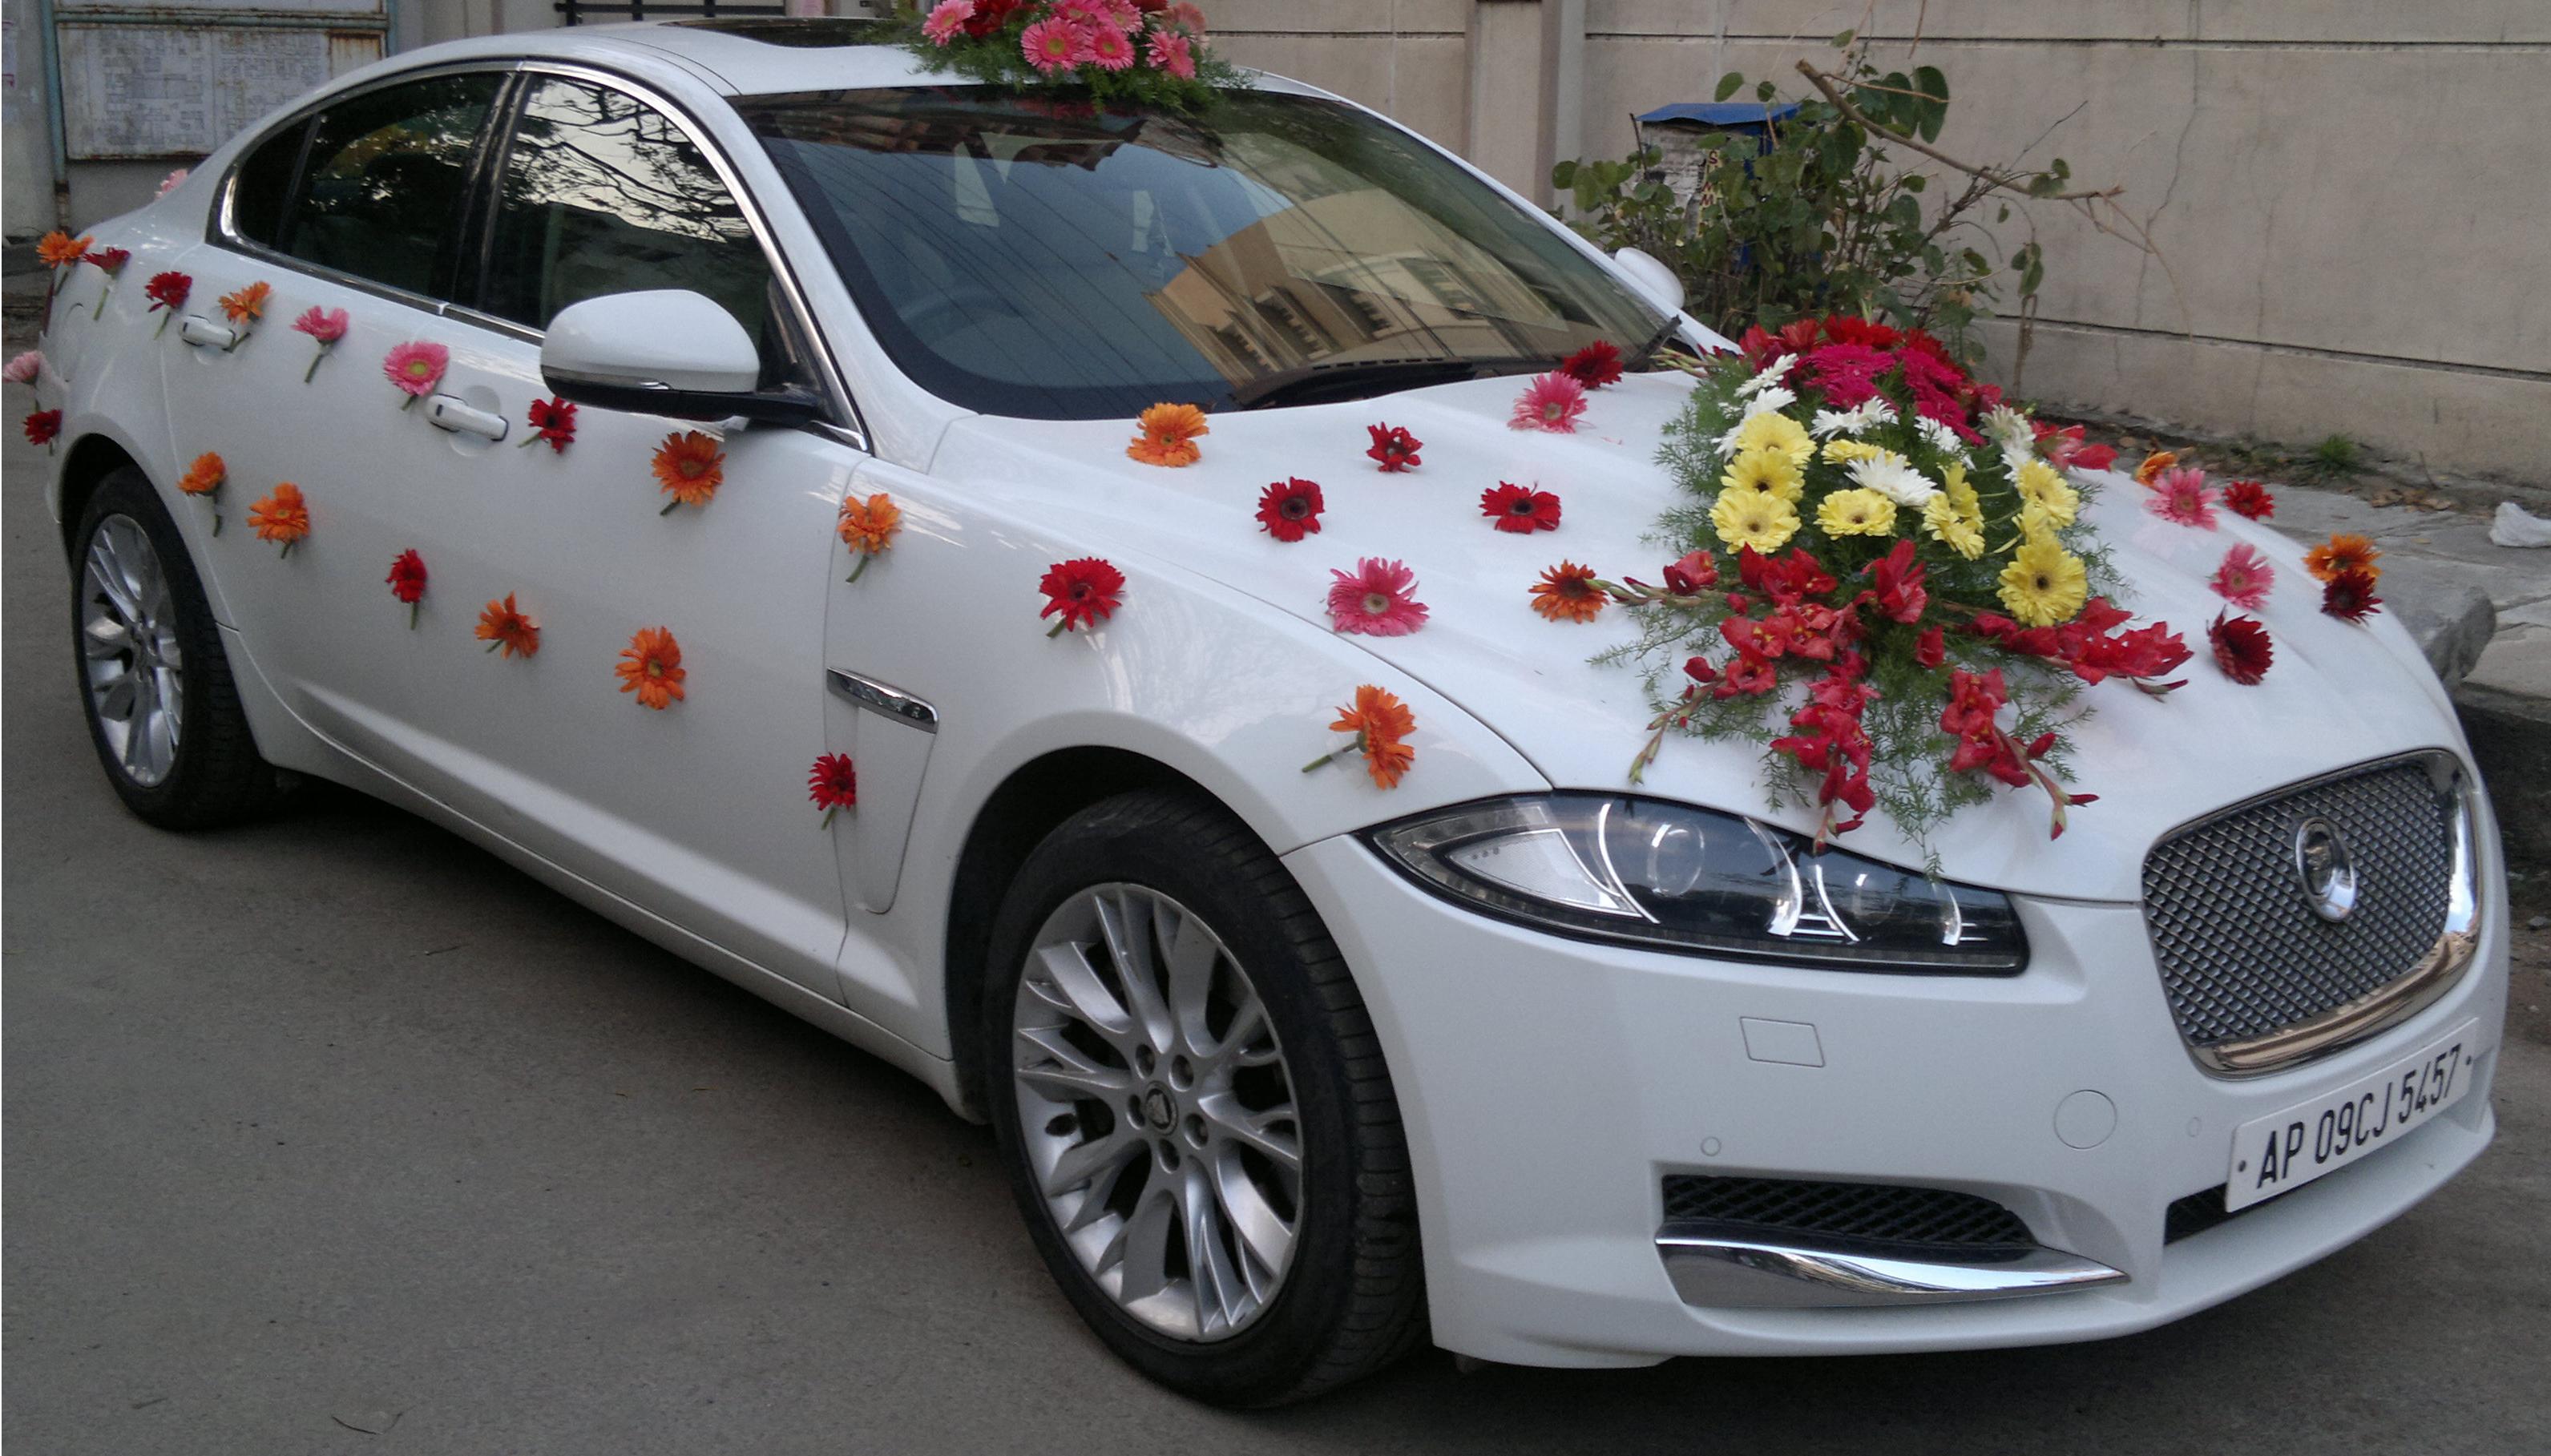 Wedding Cars Gallery - Wedding & Events - Wedding Car Travels ...